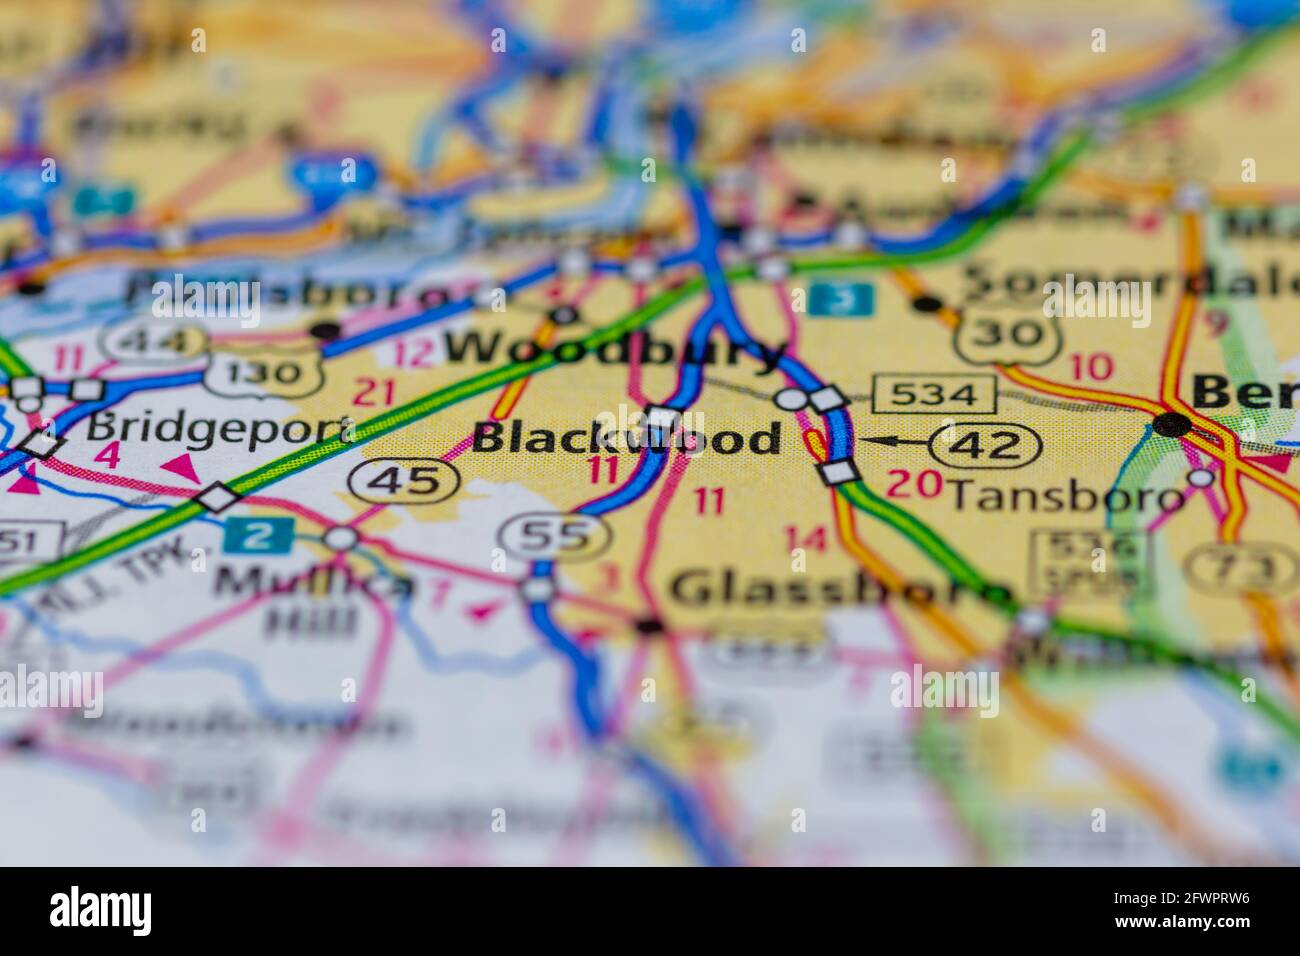 Blackwood New Jersey USA montré sur une carte de géographie ou carte routière Banque D'Images